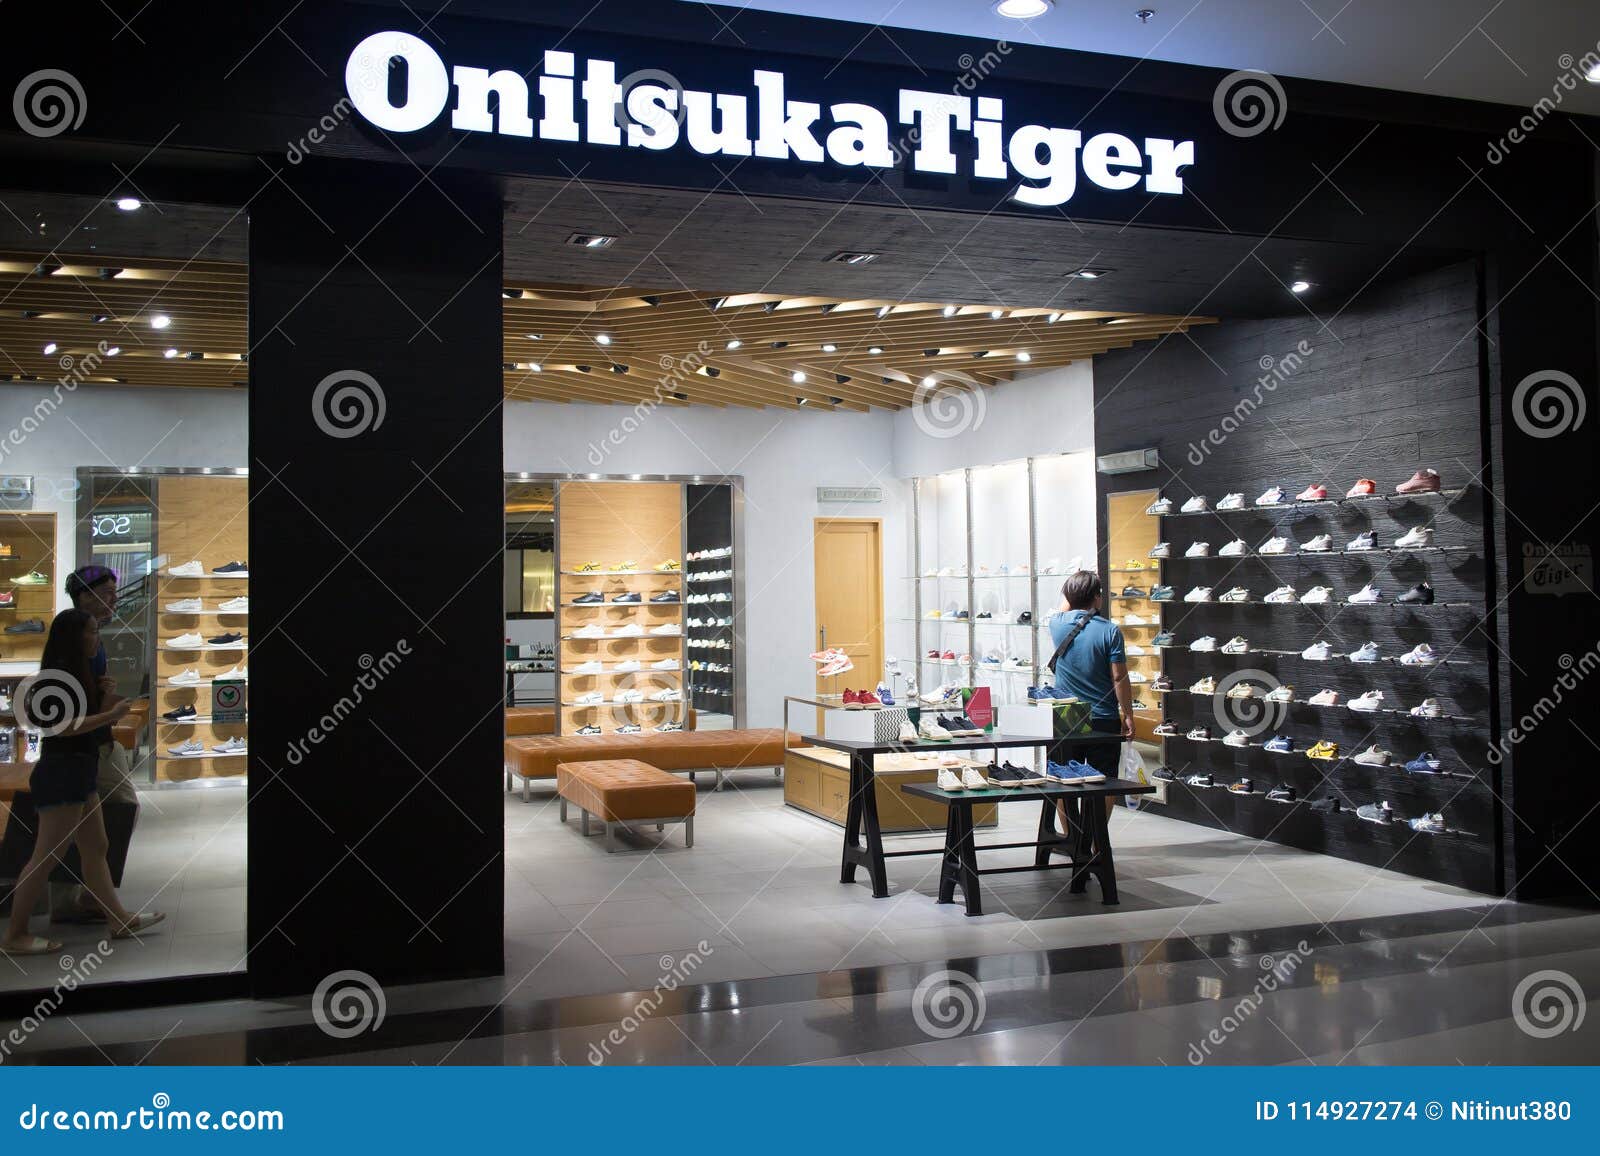 onitsuka tiger shop online